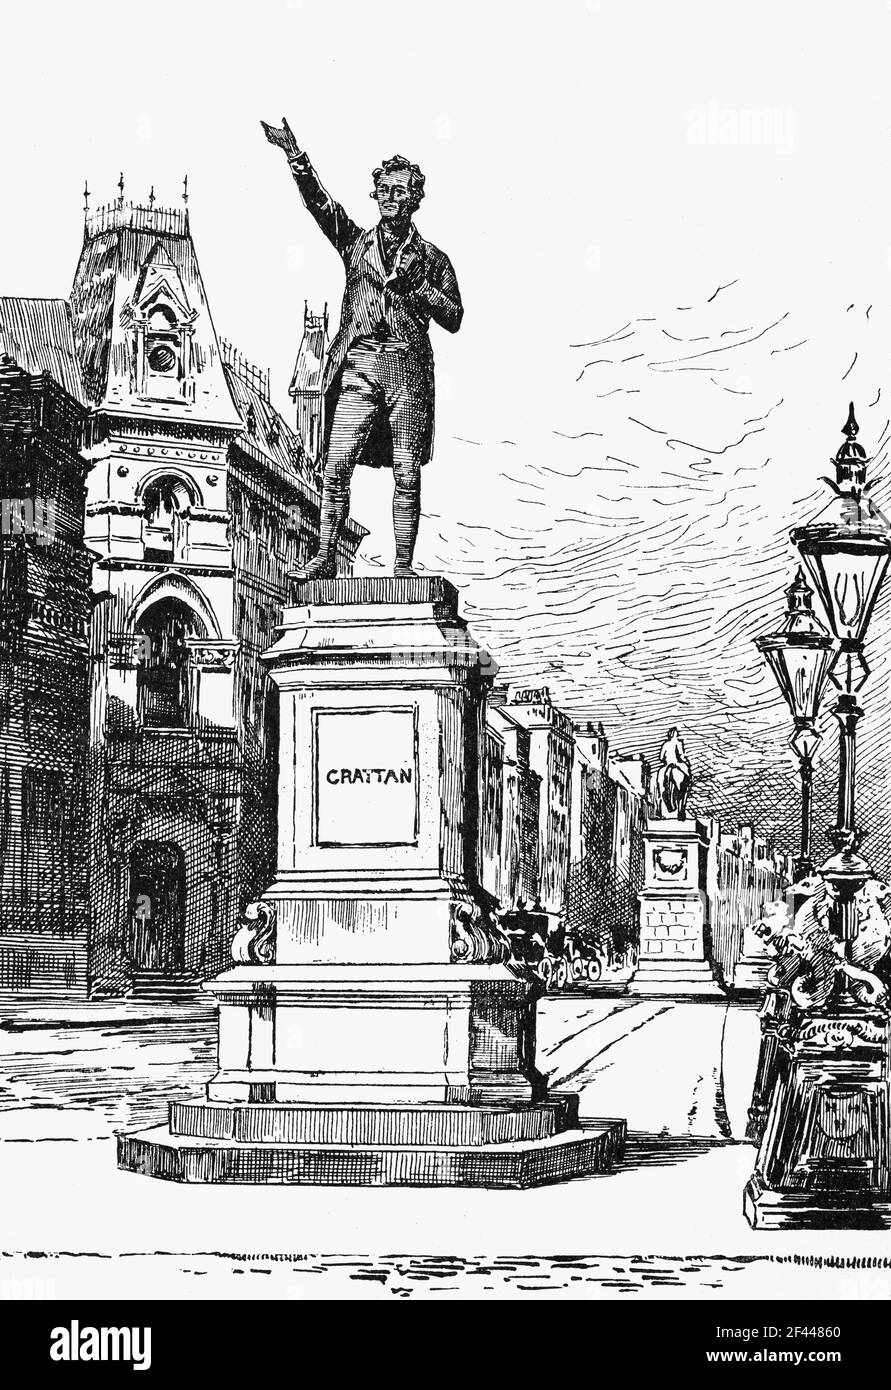 19th Jahrhundert Illustration der Statue von Henry Grattan in College Green Facing Trinity College, Dublin, erstellt von John Henry Foley im Jahr 1876. Grattan (1746-1820) war ein irischer Politiker und Anwalt, der sich Ende des 18th. Jahrhunderts für die gesetzgeberische Freiheit des irischen Parlaments von Großbritannien aus einsetzte. Stockfoto